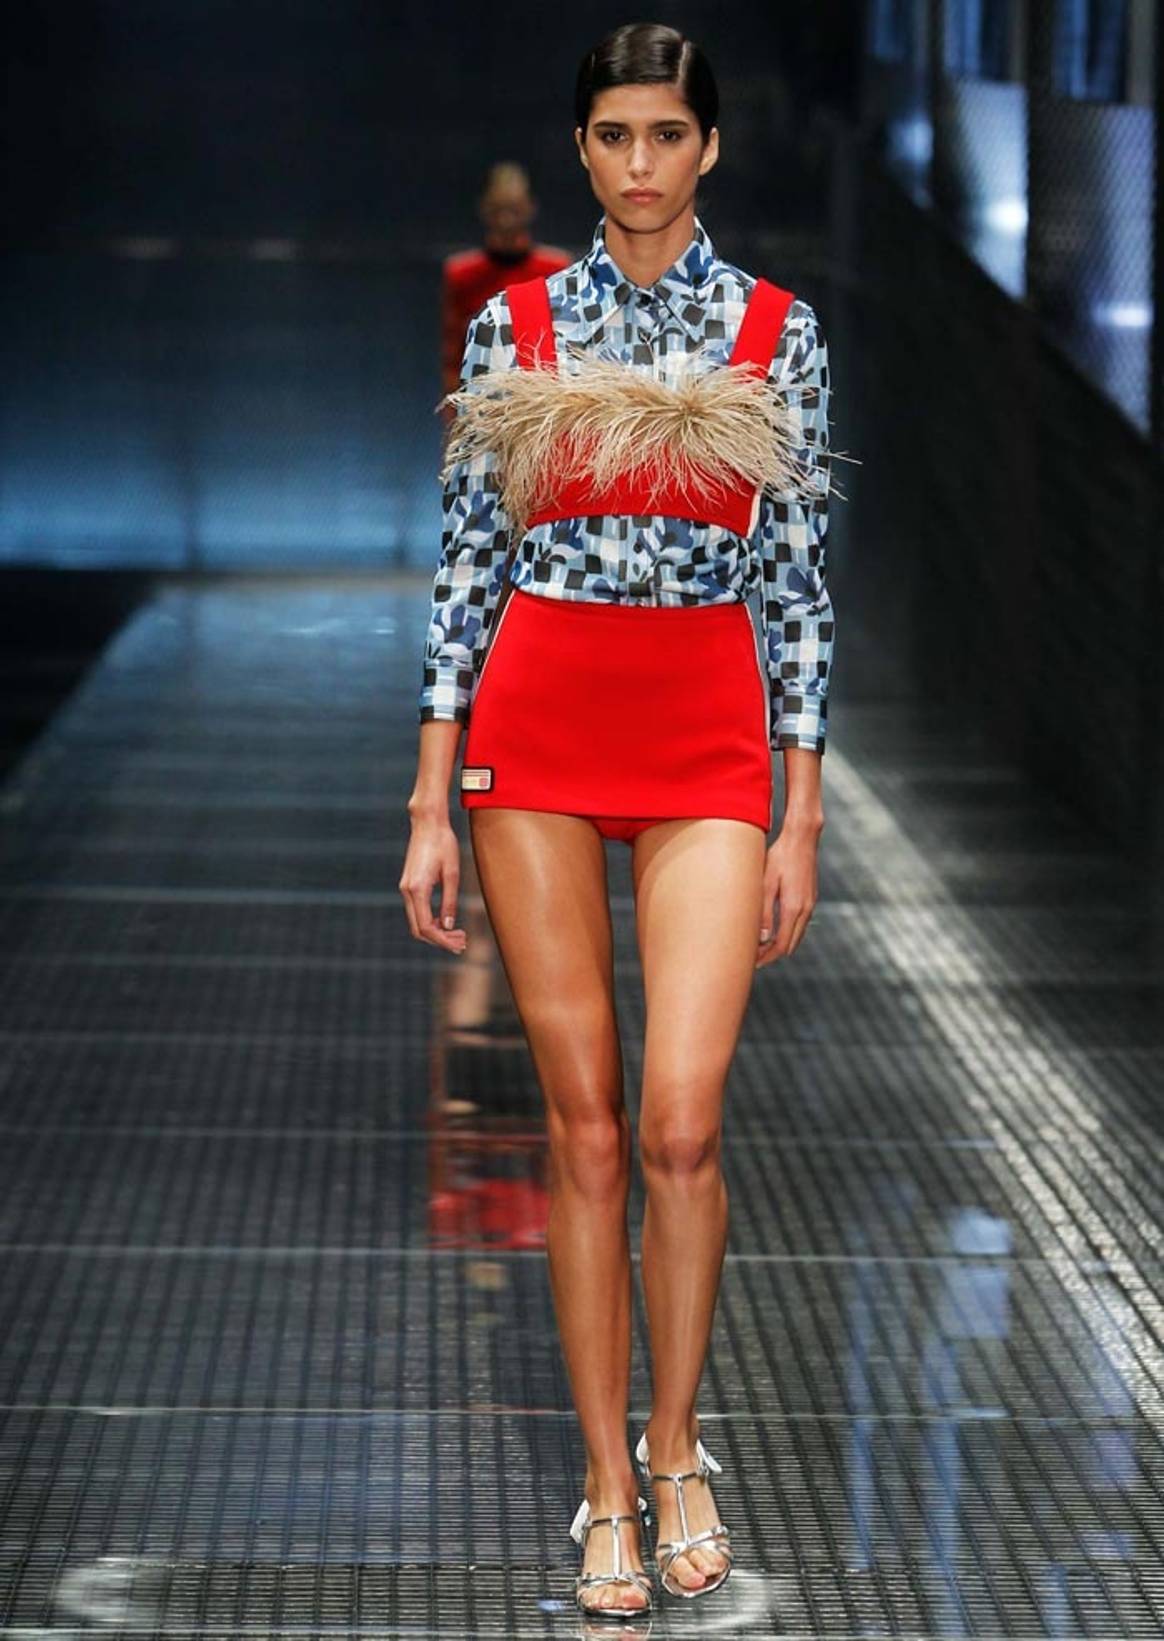 Milan Fashion Week: Prada SS17 review